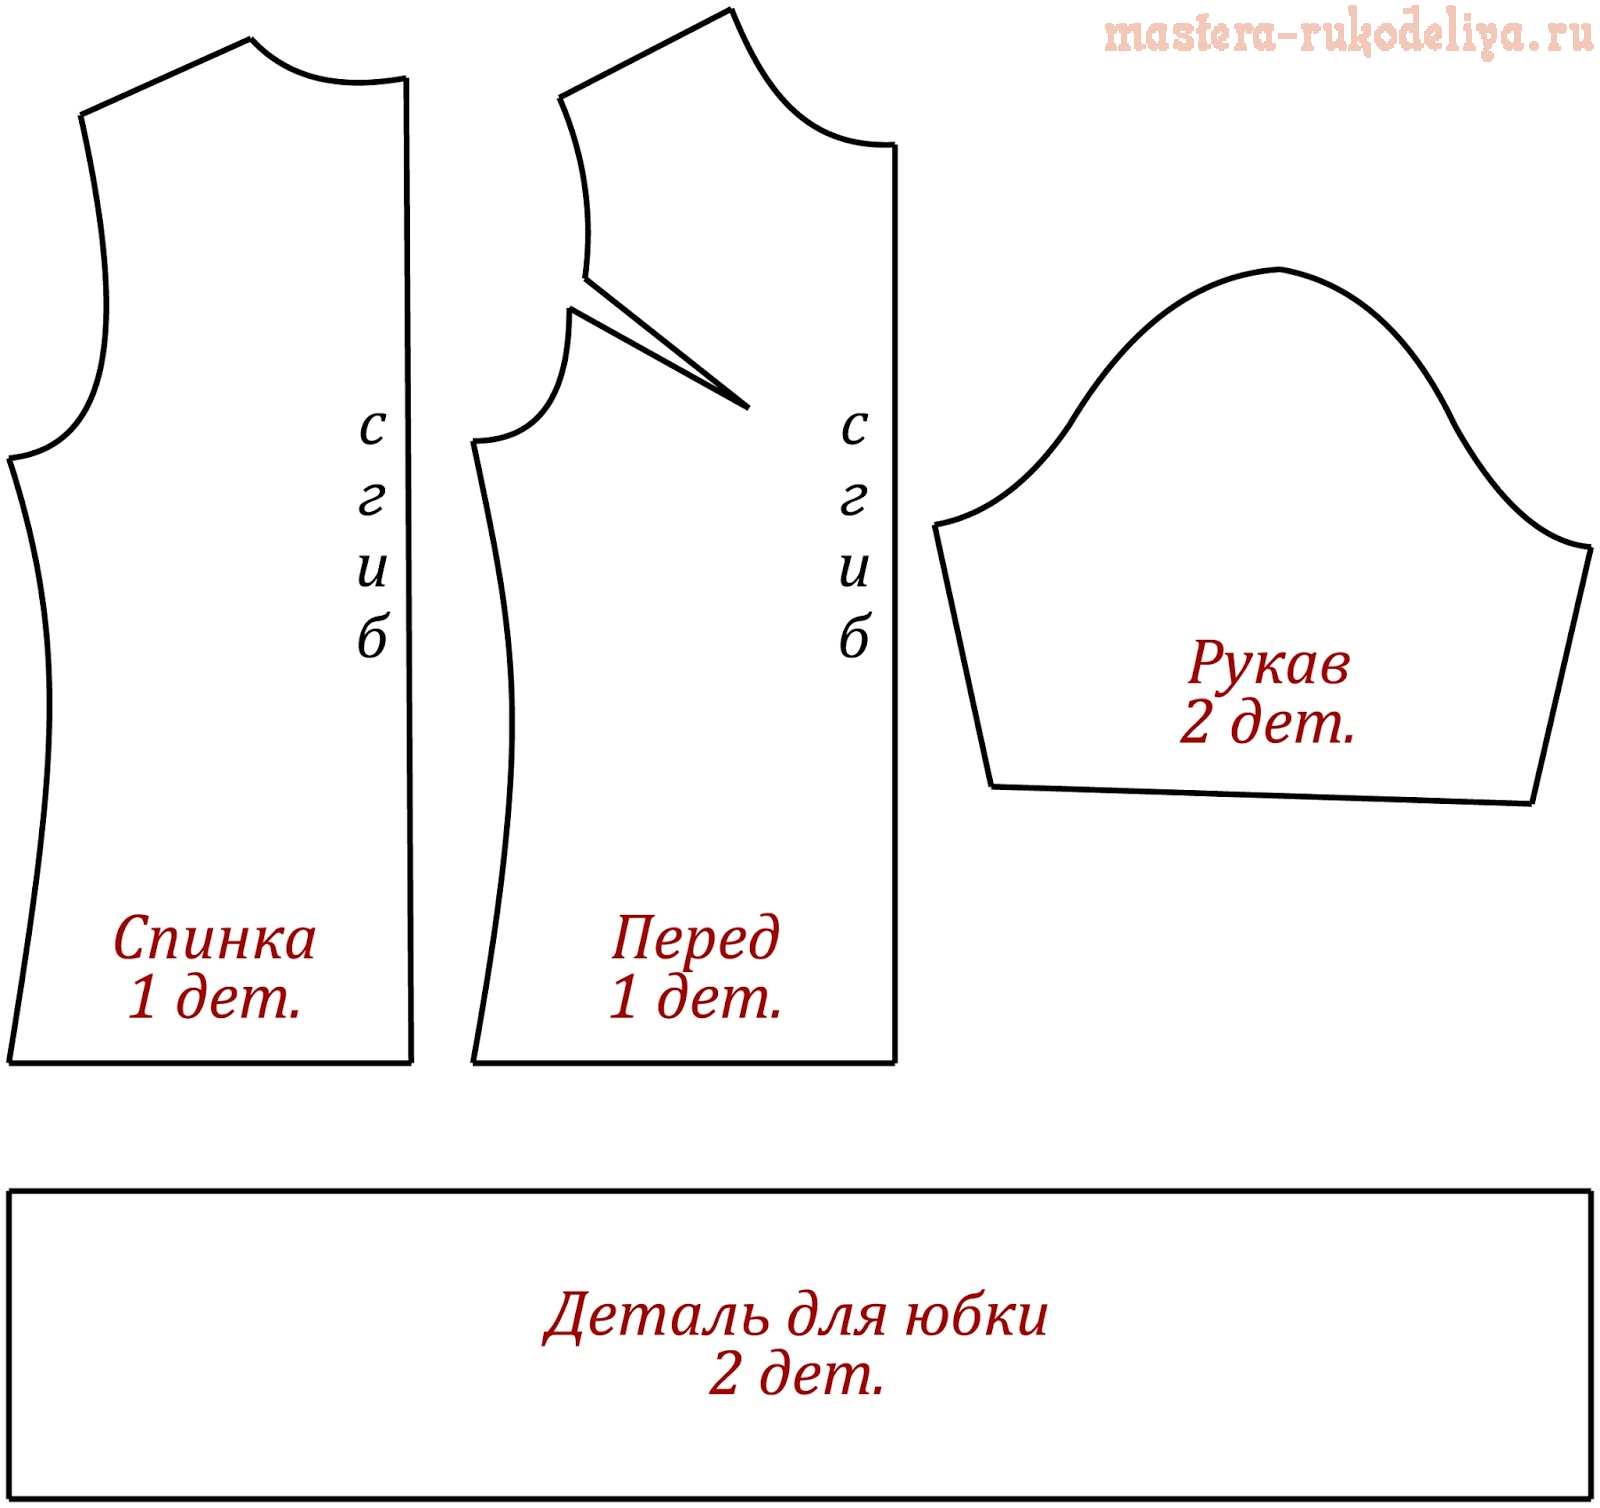 Мастер-класс по шитью: Модное платье из шелка